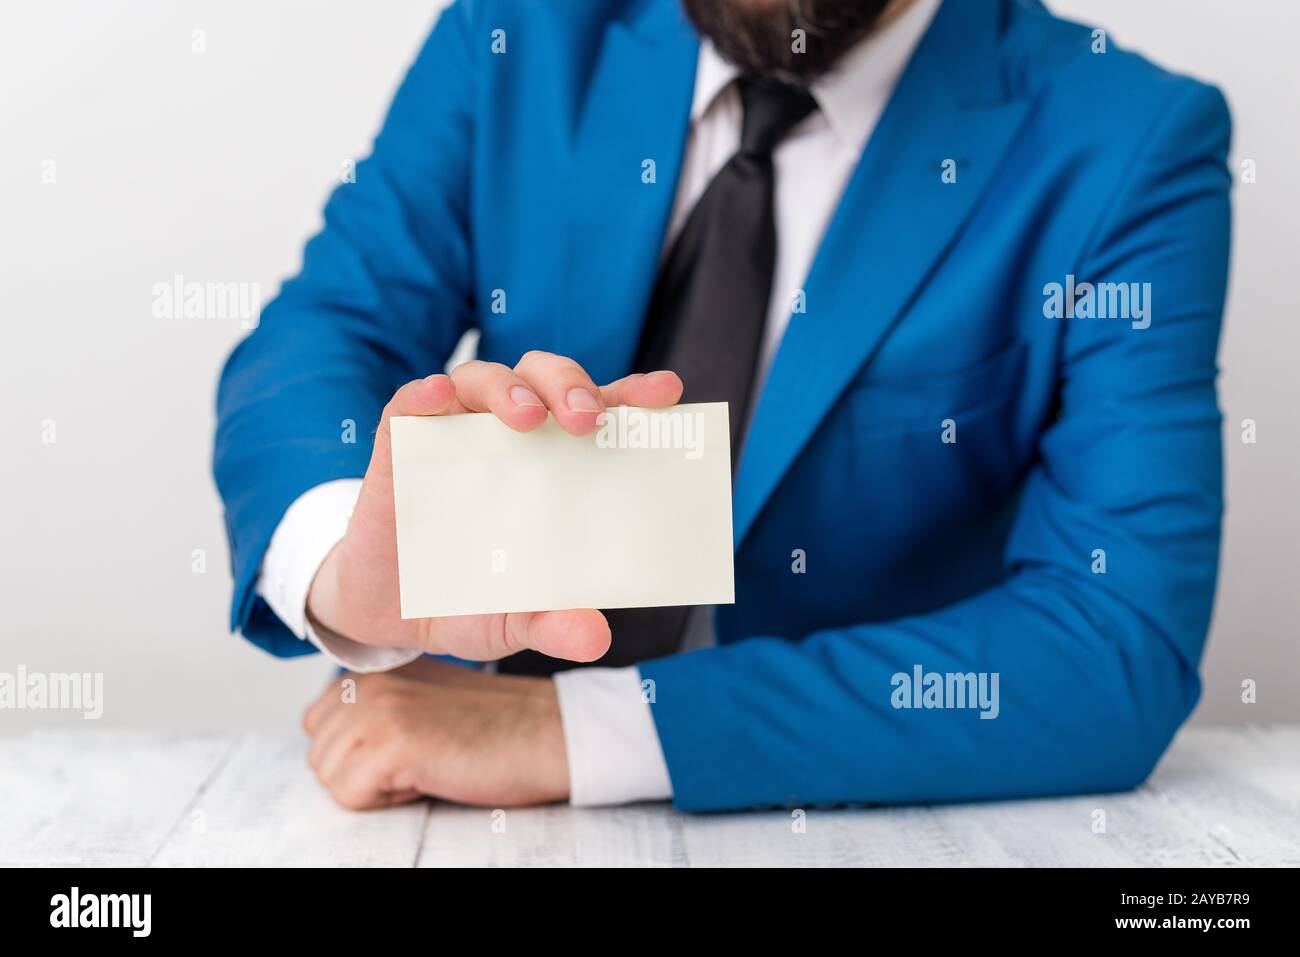 L'uomo tiene carta vuota con spazio per le copie davanti a lui. Concetto di business con l'uomo in una suite e una cravatta. Spazio bianco per pubblicità Foto Stock